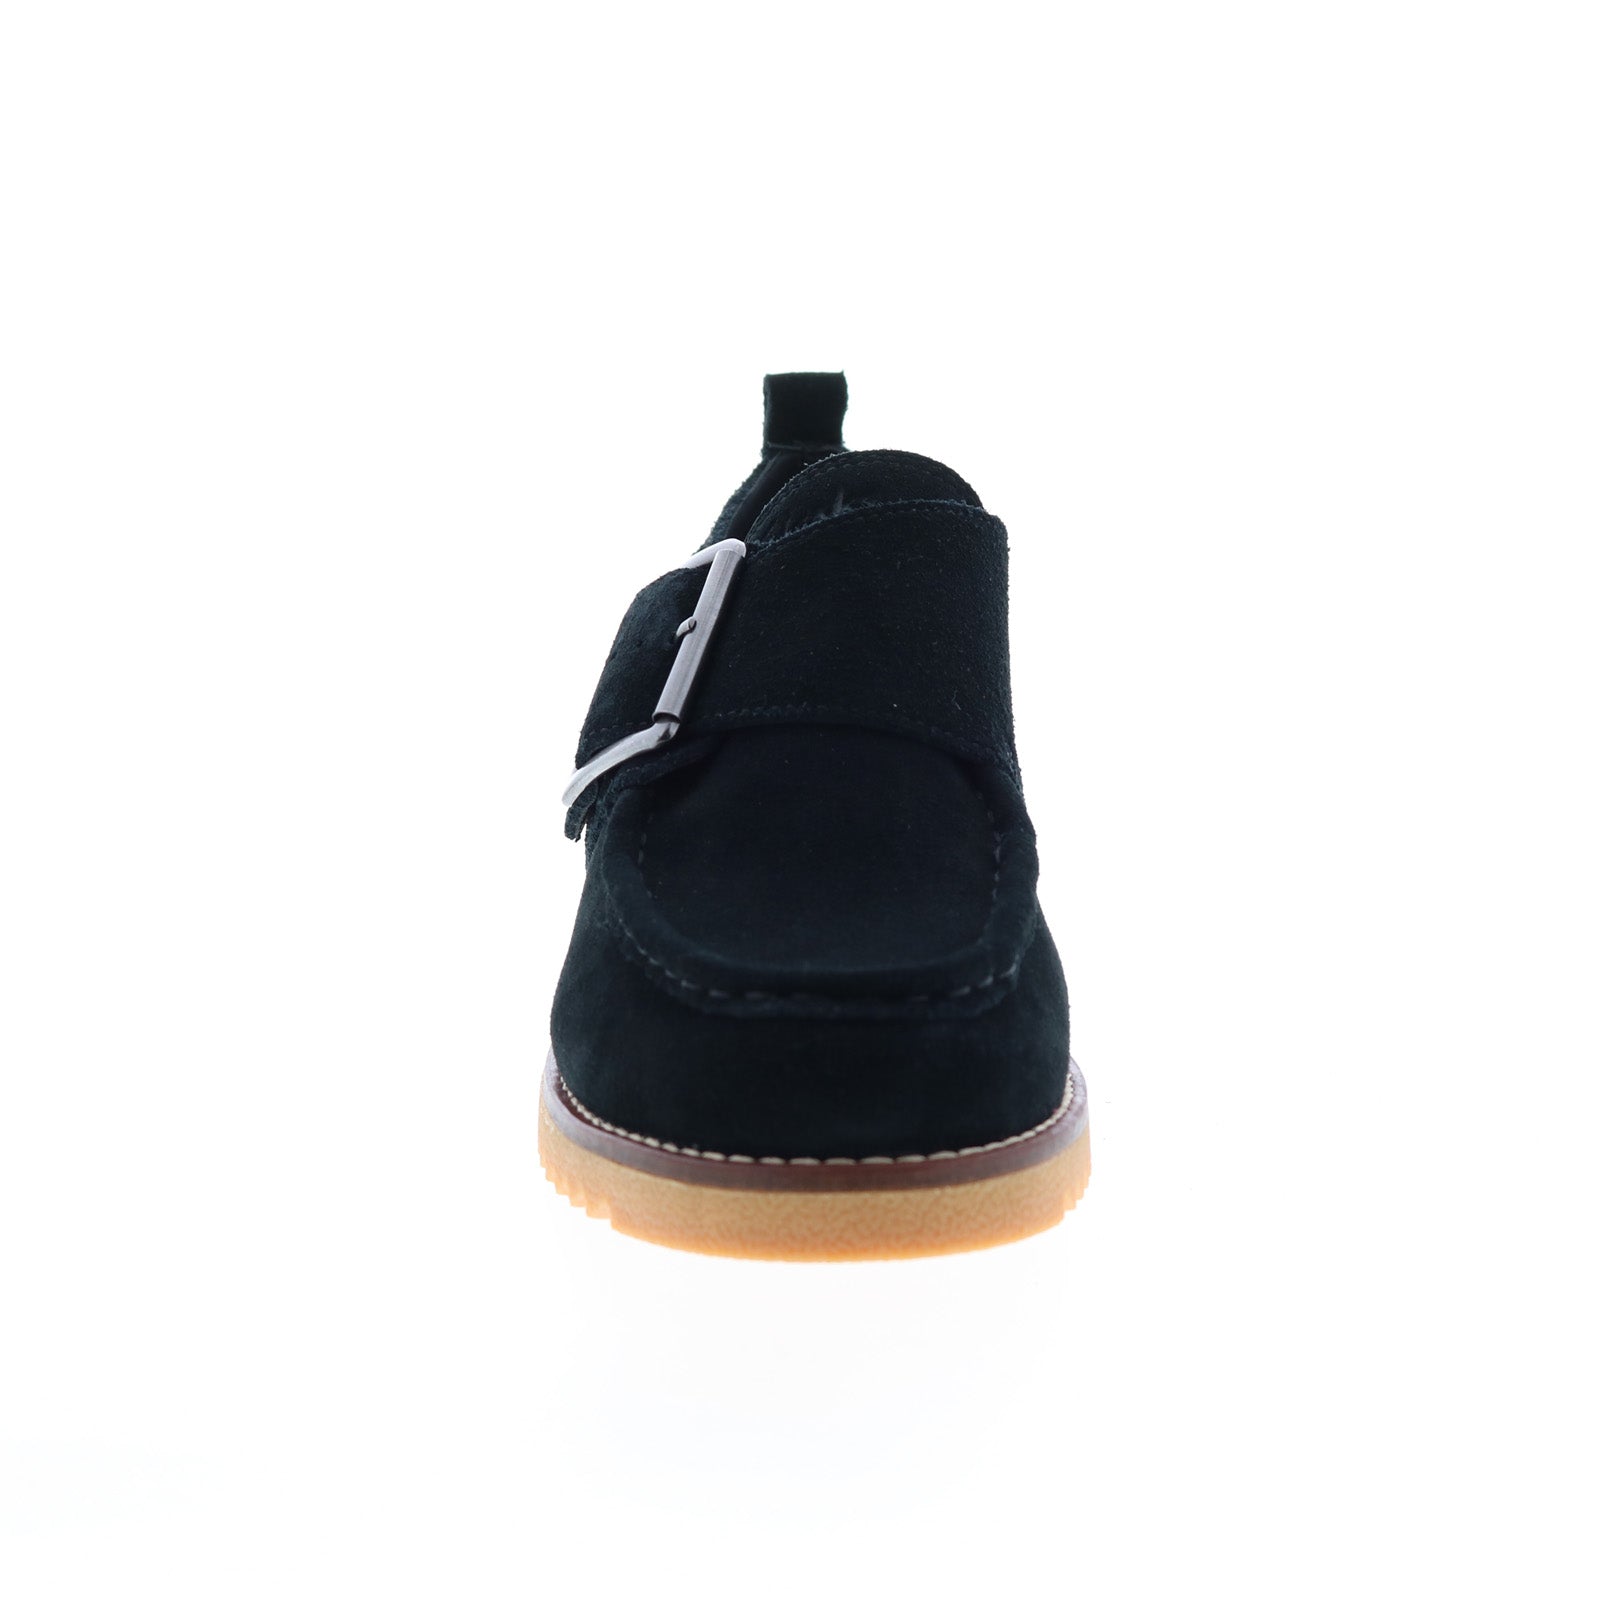 Clarks Eden Mid Monk 26161317 Womens Black Suede Block Heels Shoes ...